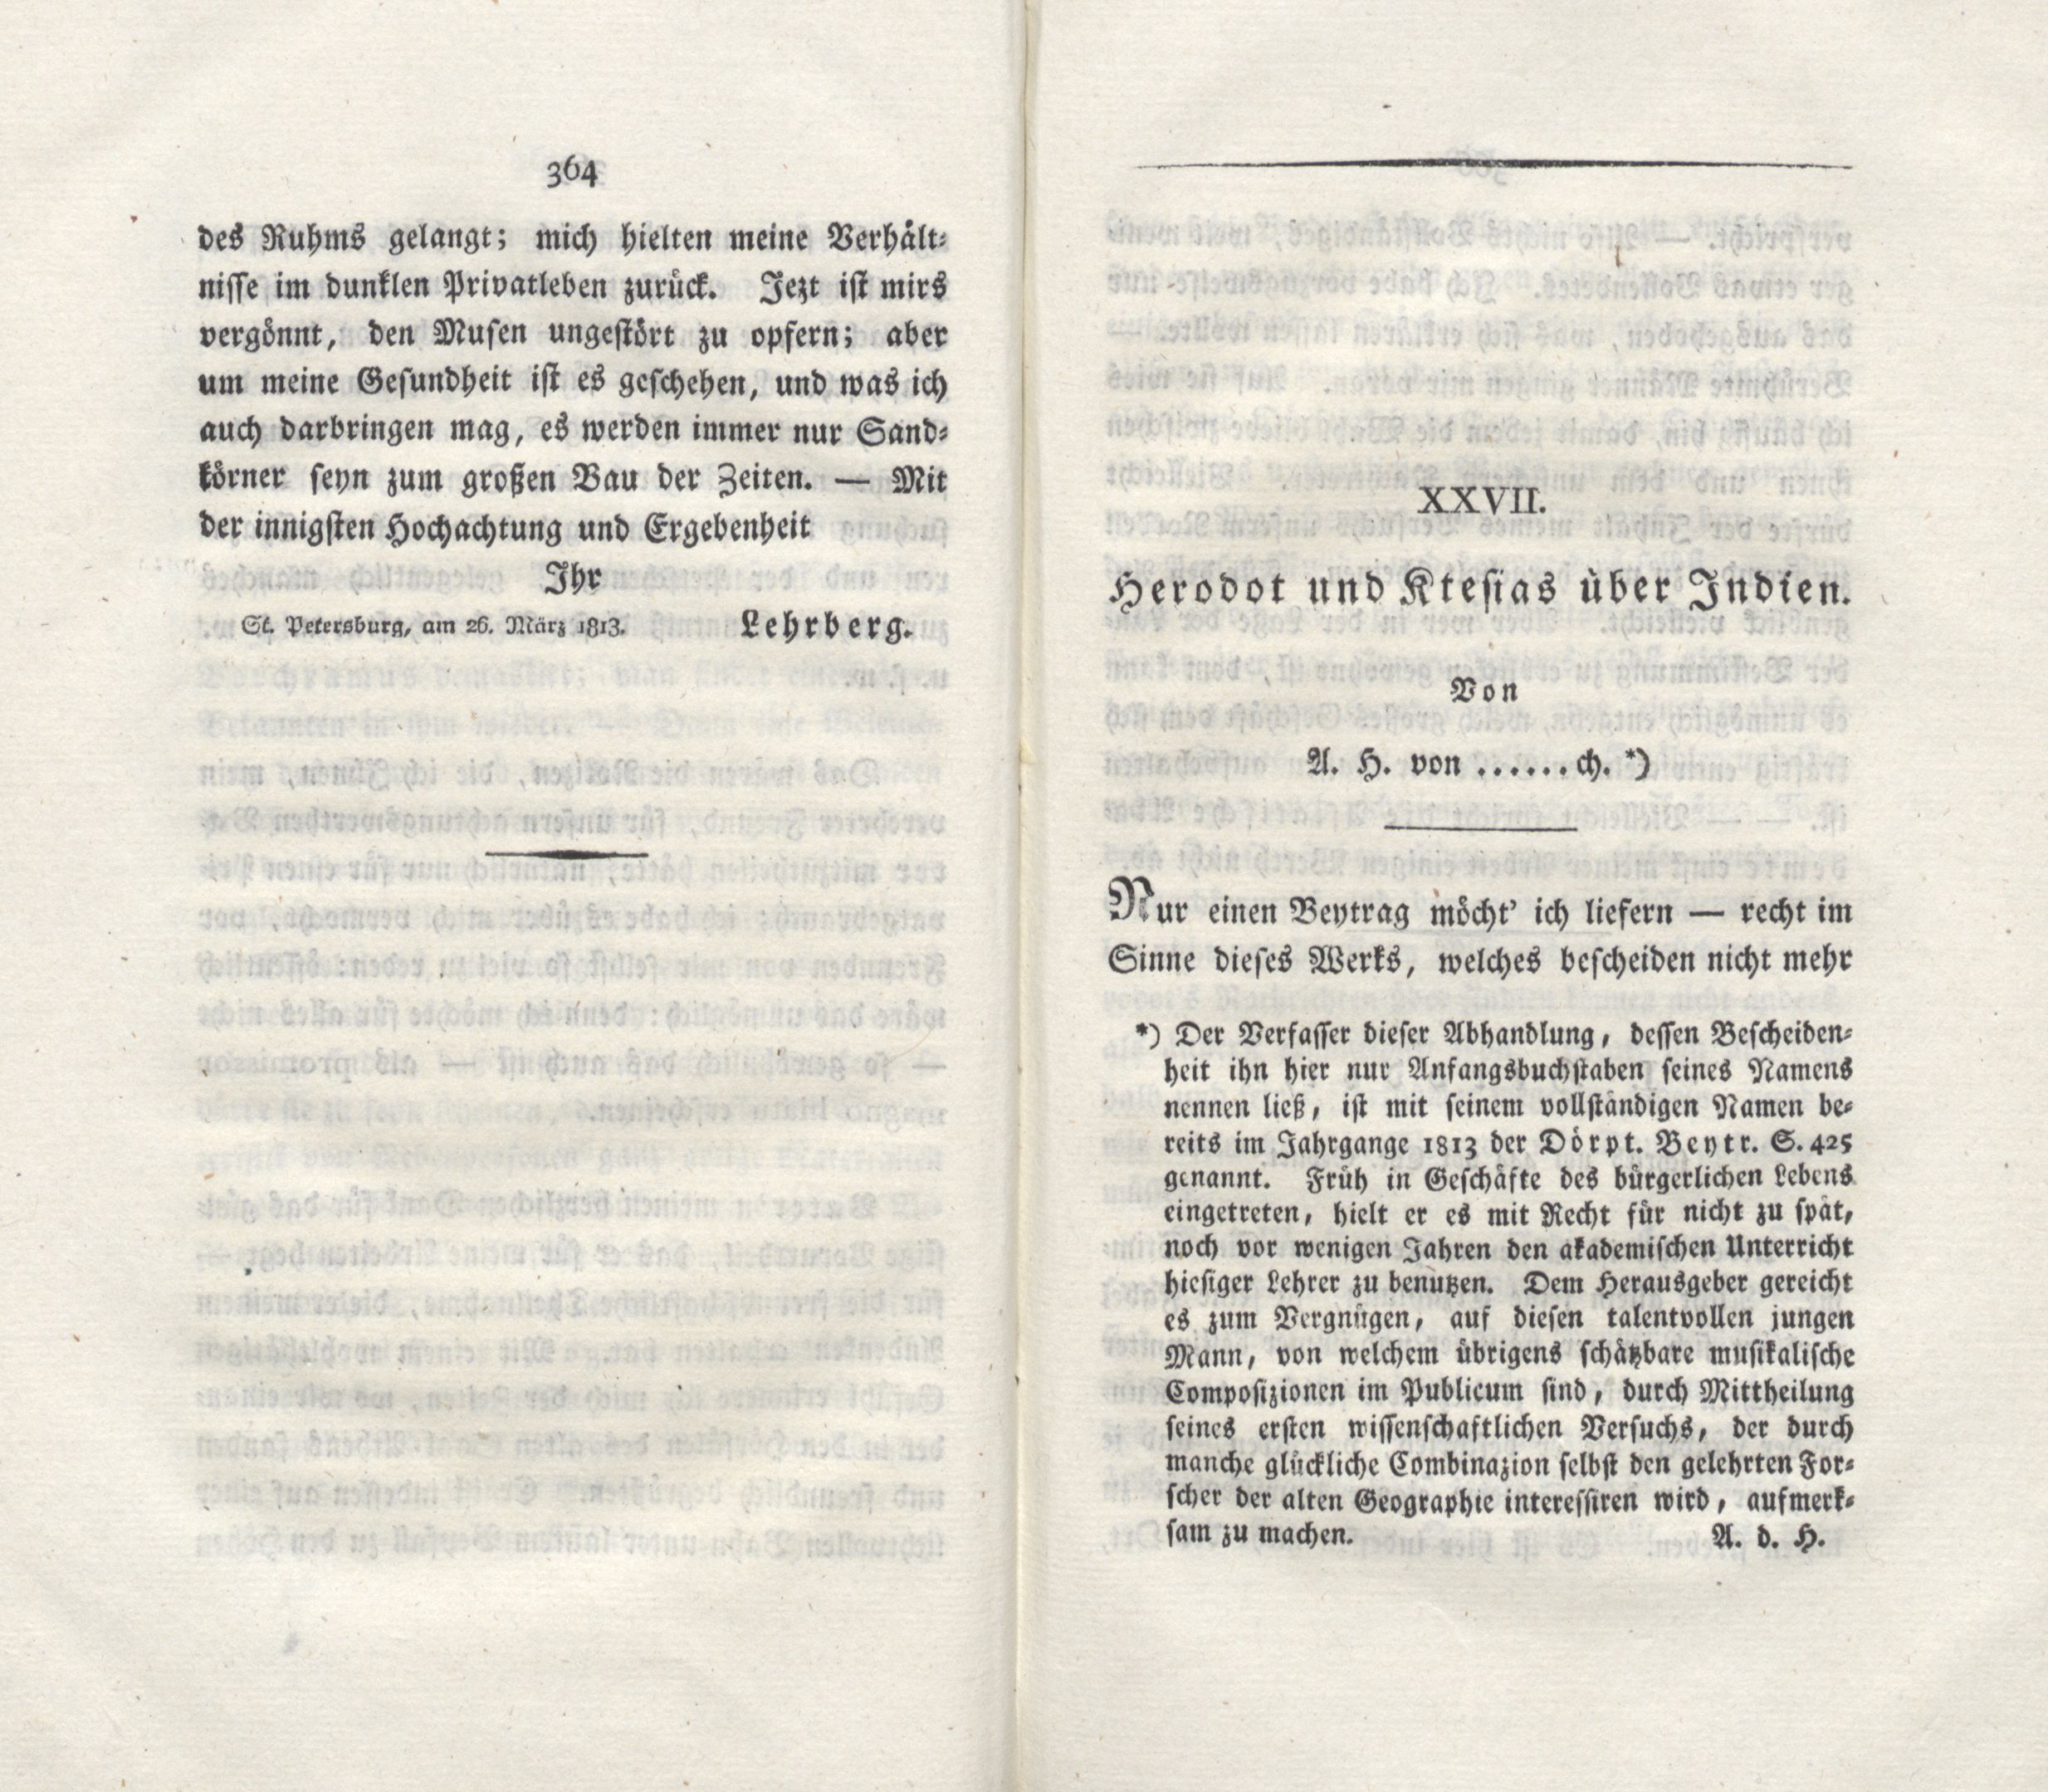 Herodot und Ktesias über Indien (1815) | 1. (364-365) Haupttext